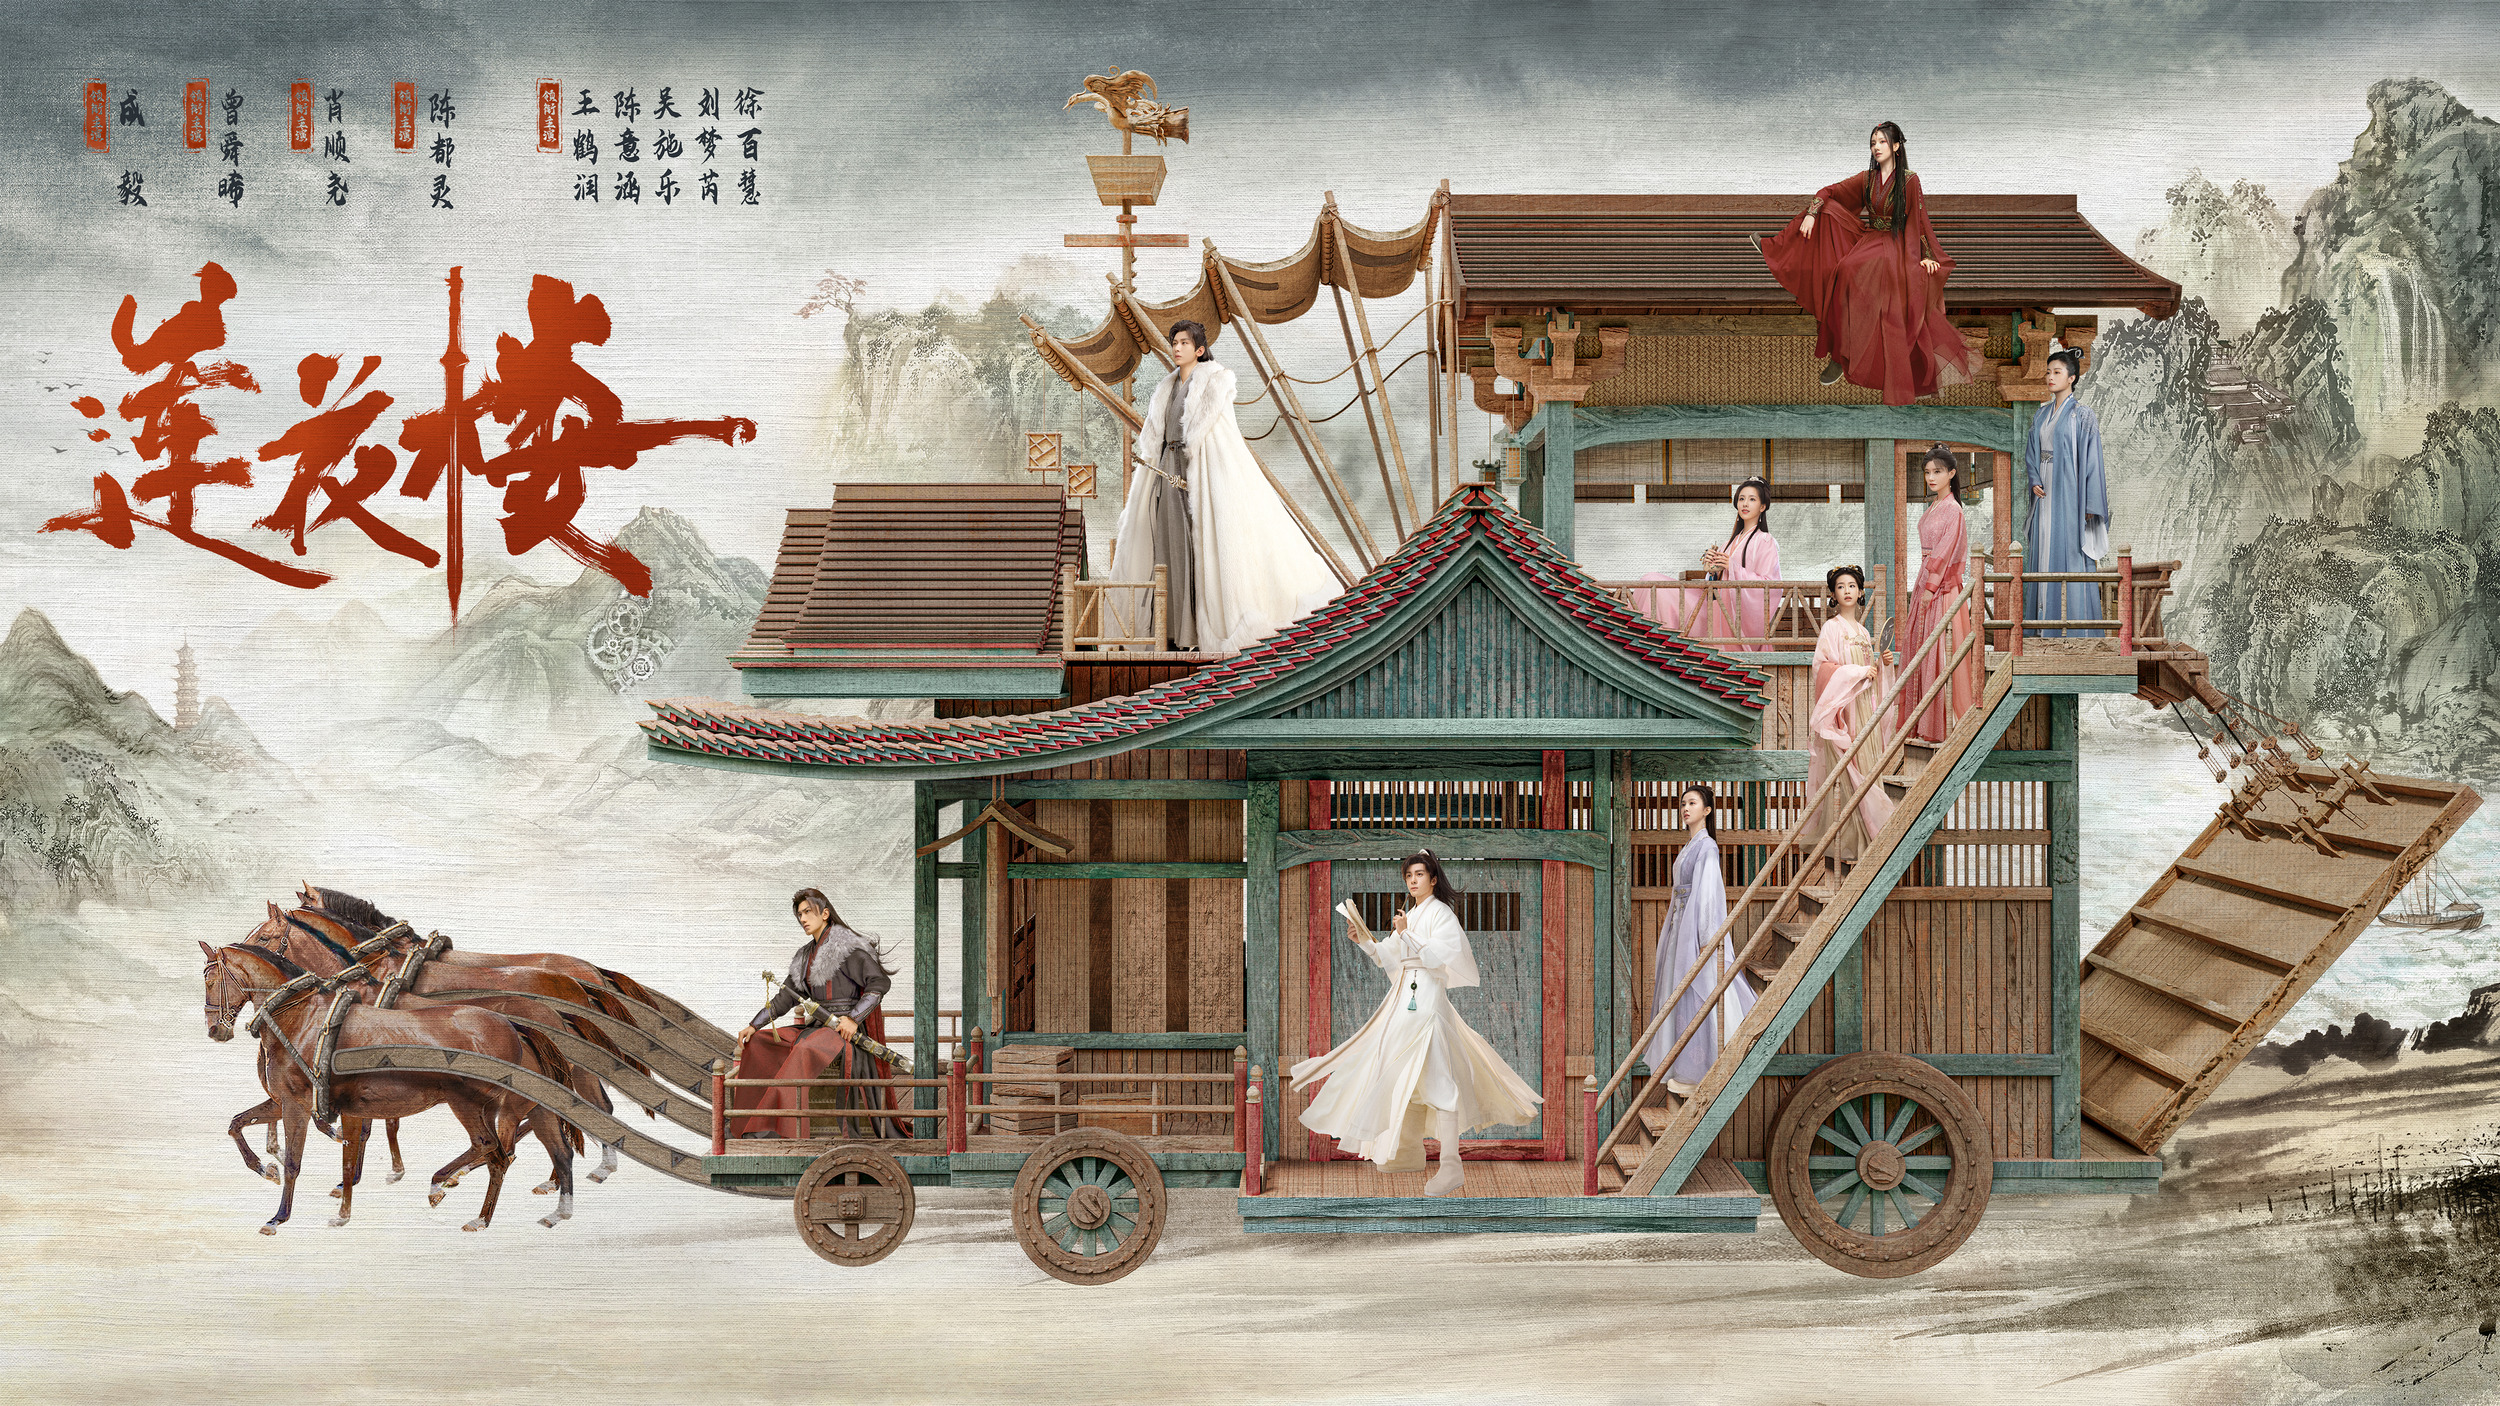 Mega Sized TV Poster Image for Lian hua lou 